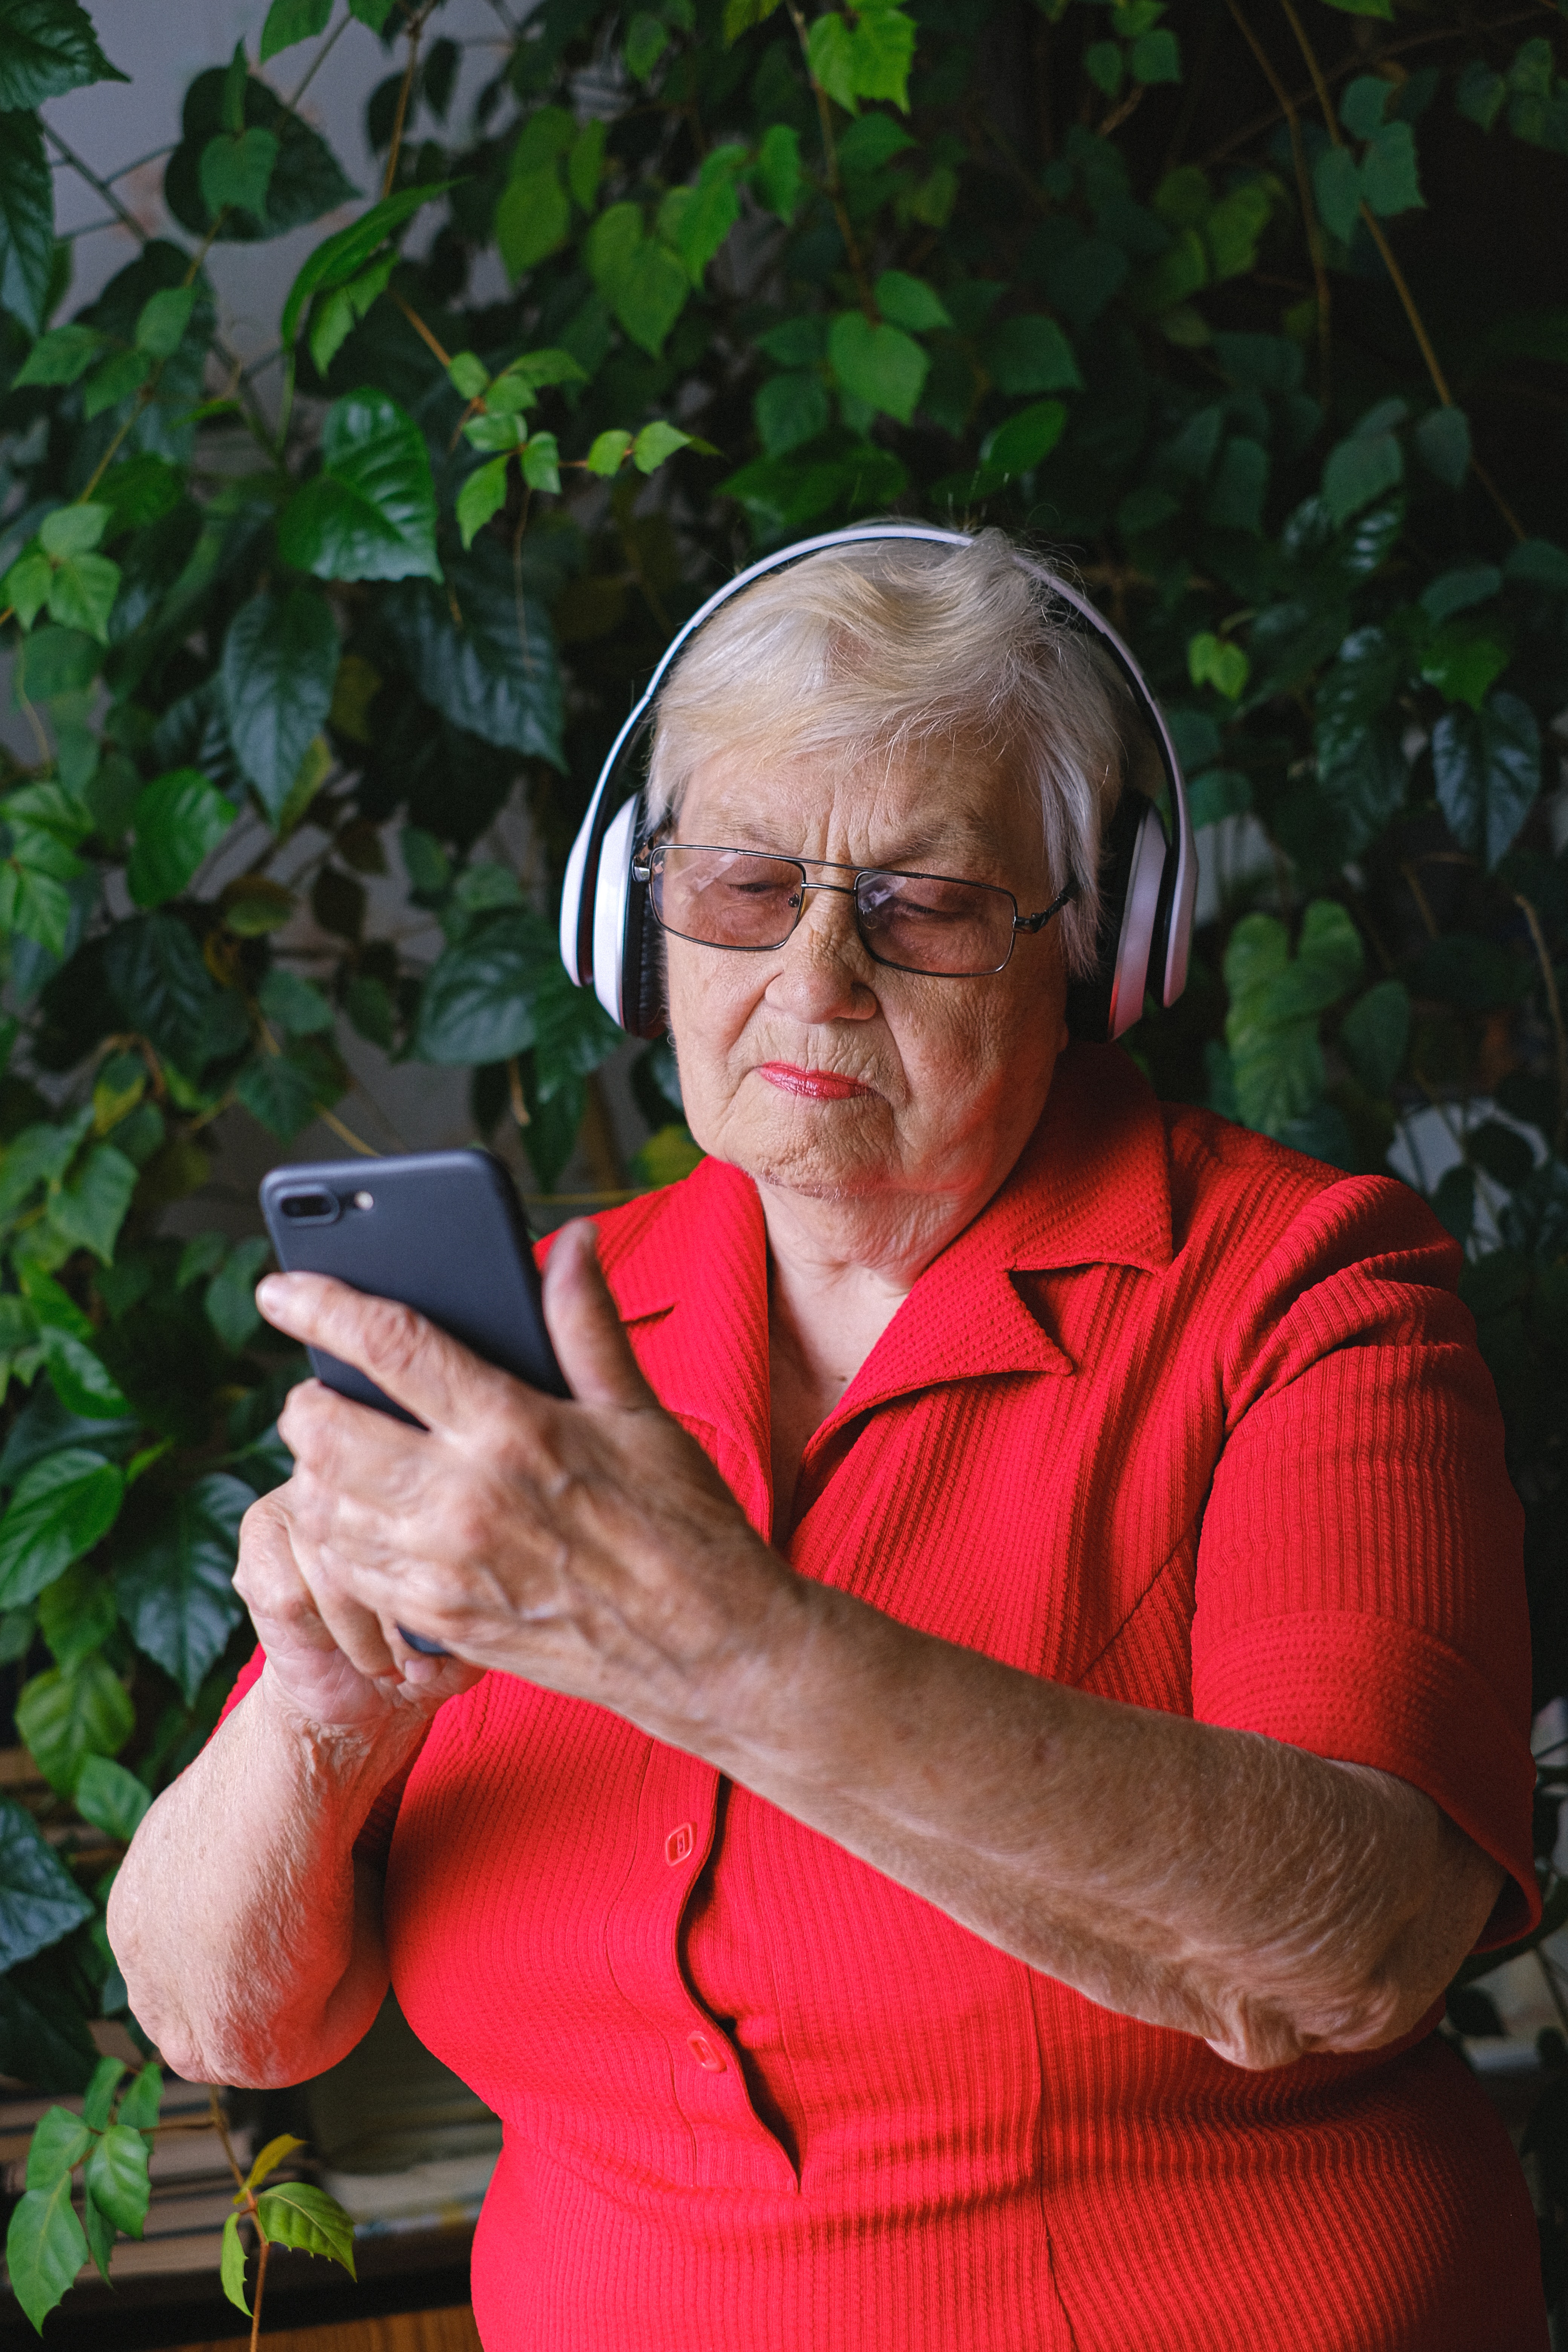 Eine ältere Frau trägt einen Kopfhörer und tippt auf einem Handy herum | Quelle: Pexels